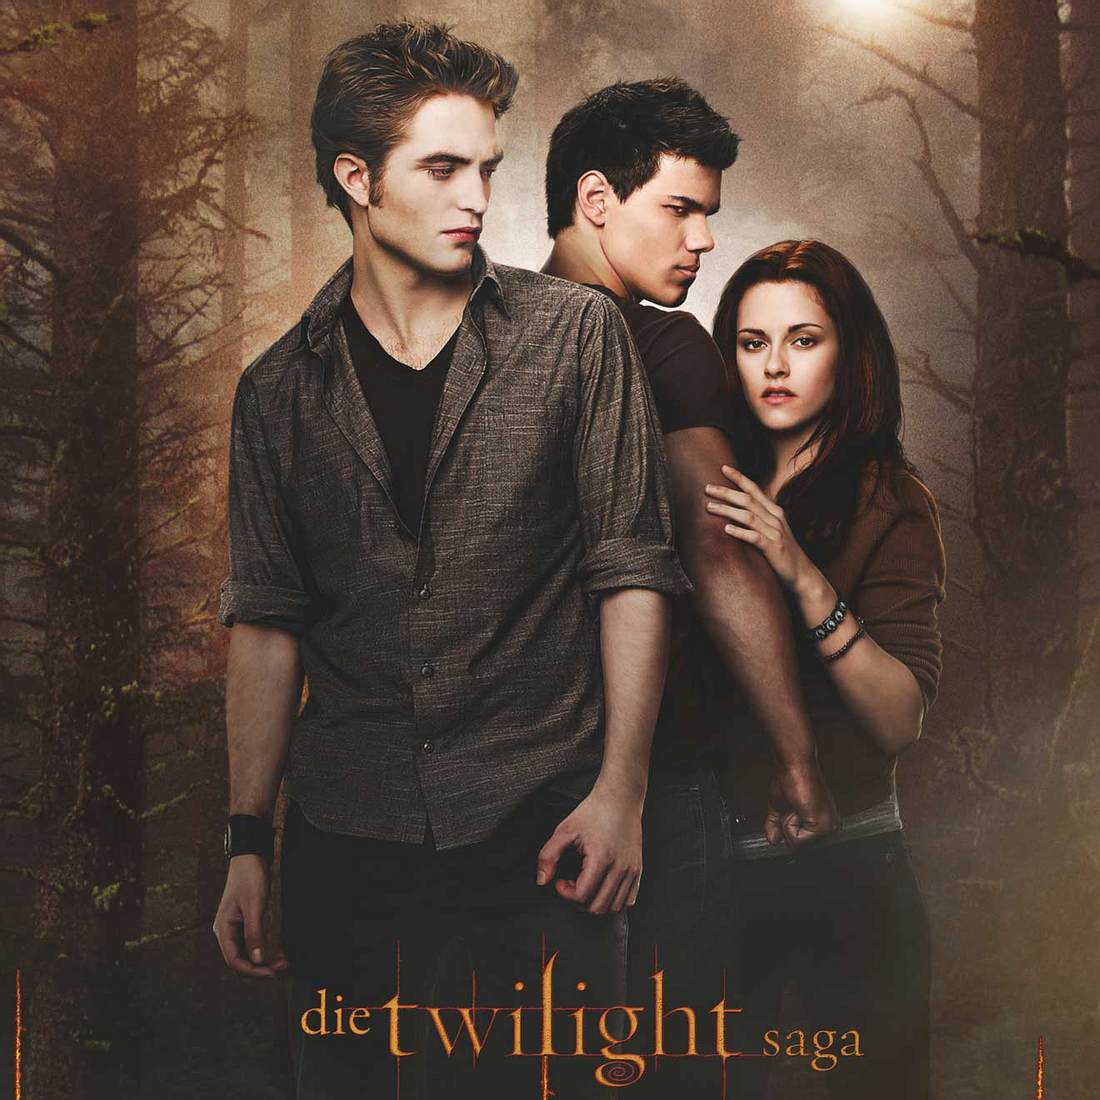 Kommt ein neuer Twilight Teil